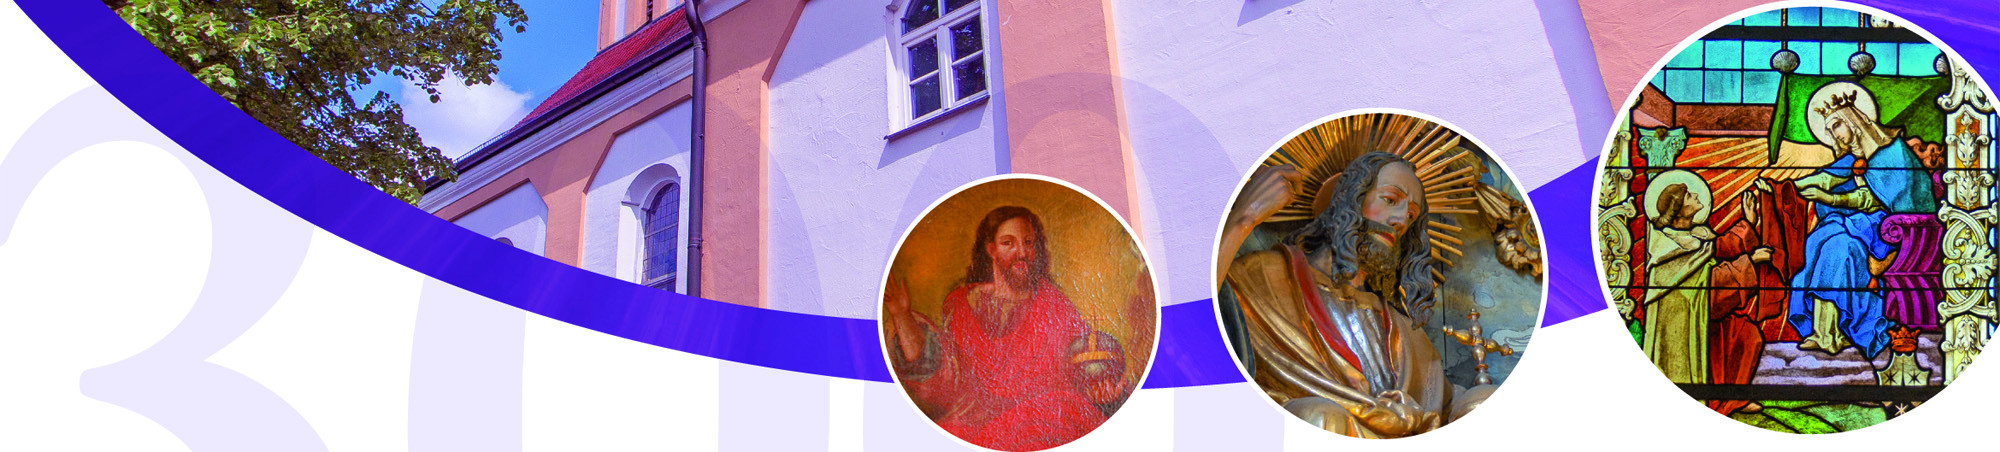 Details aus der Kirche -- Gemälde, Plastik, Glasfenster und Außenfassade -- grafisch verbunden